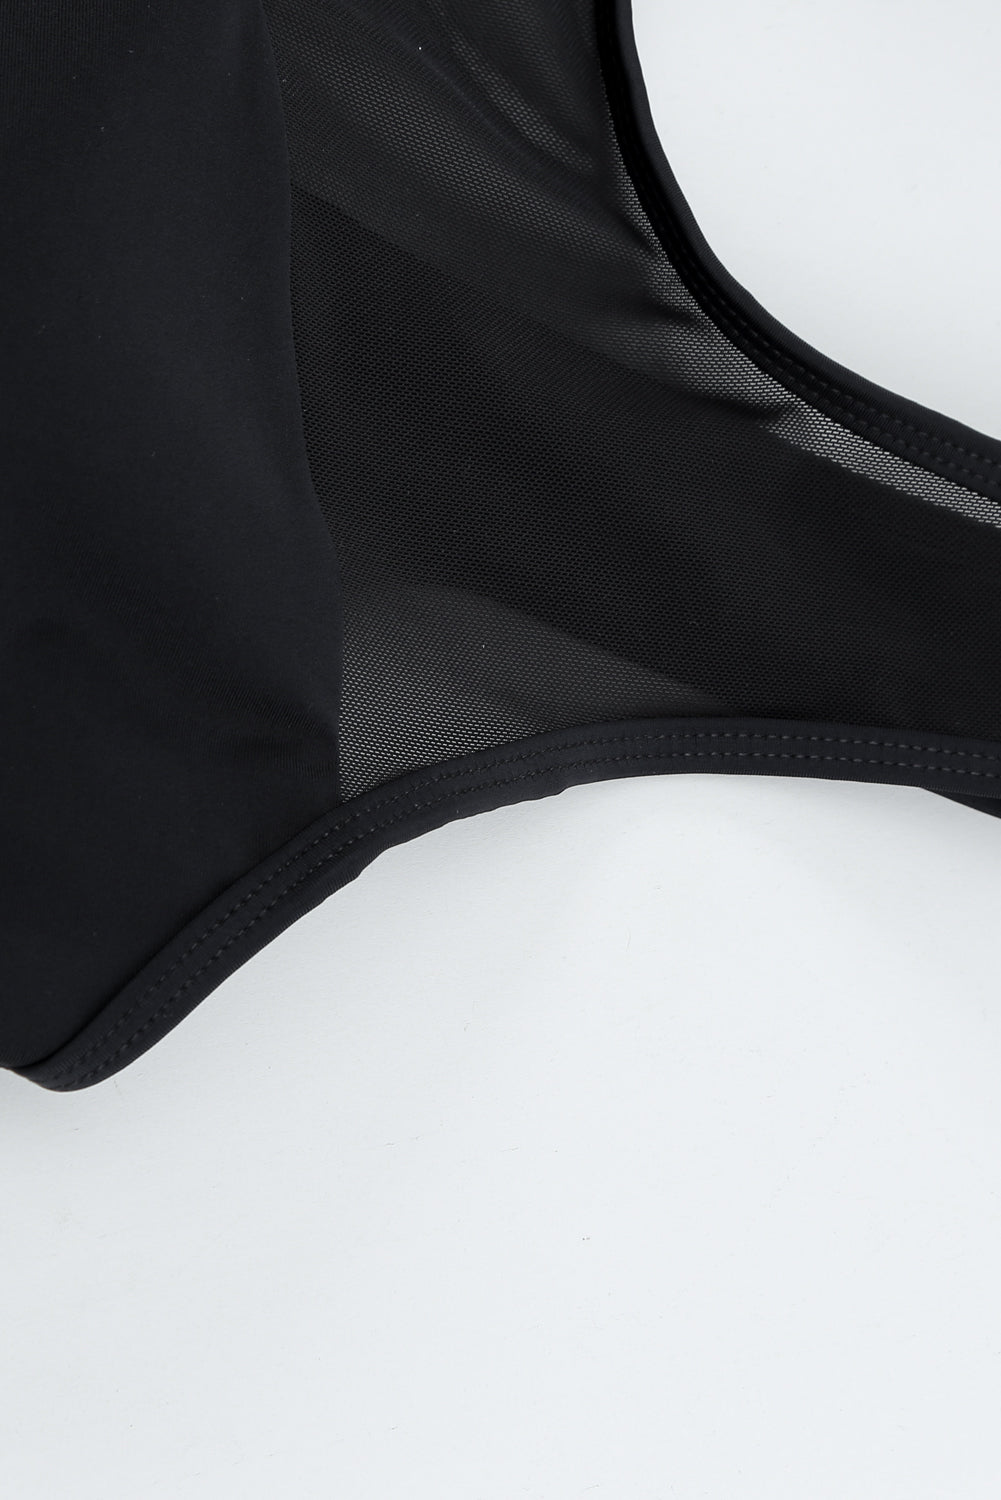 Schwarzer, einteiliger Badeanzug aus Netzstoff mit ausgehöhltem Rücken und Trägern